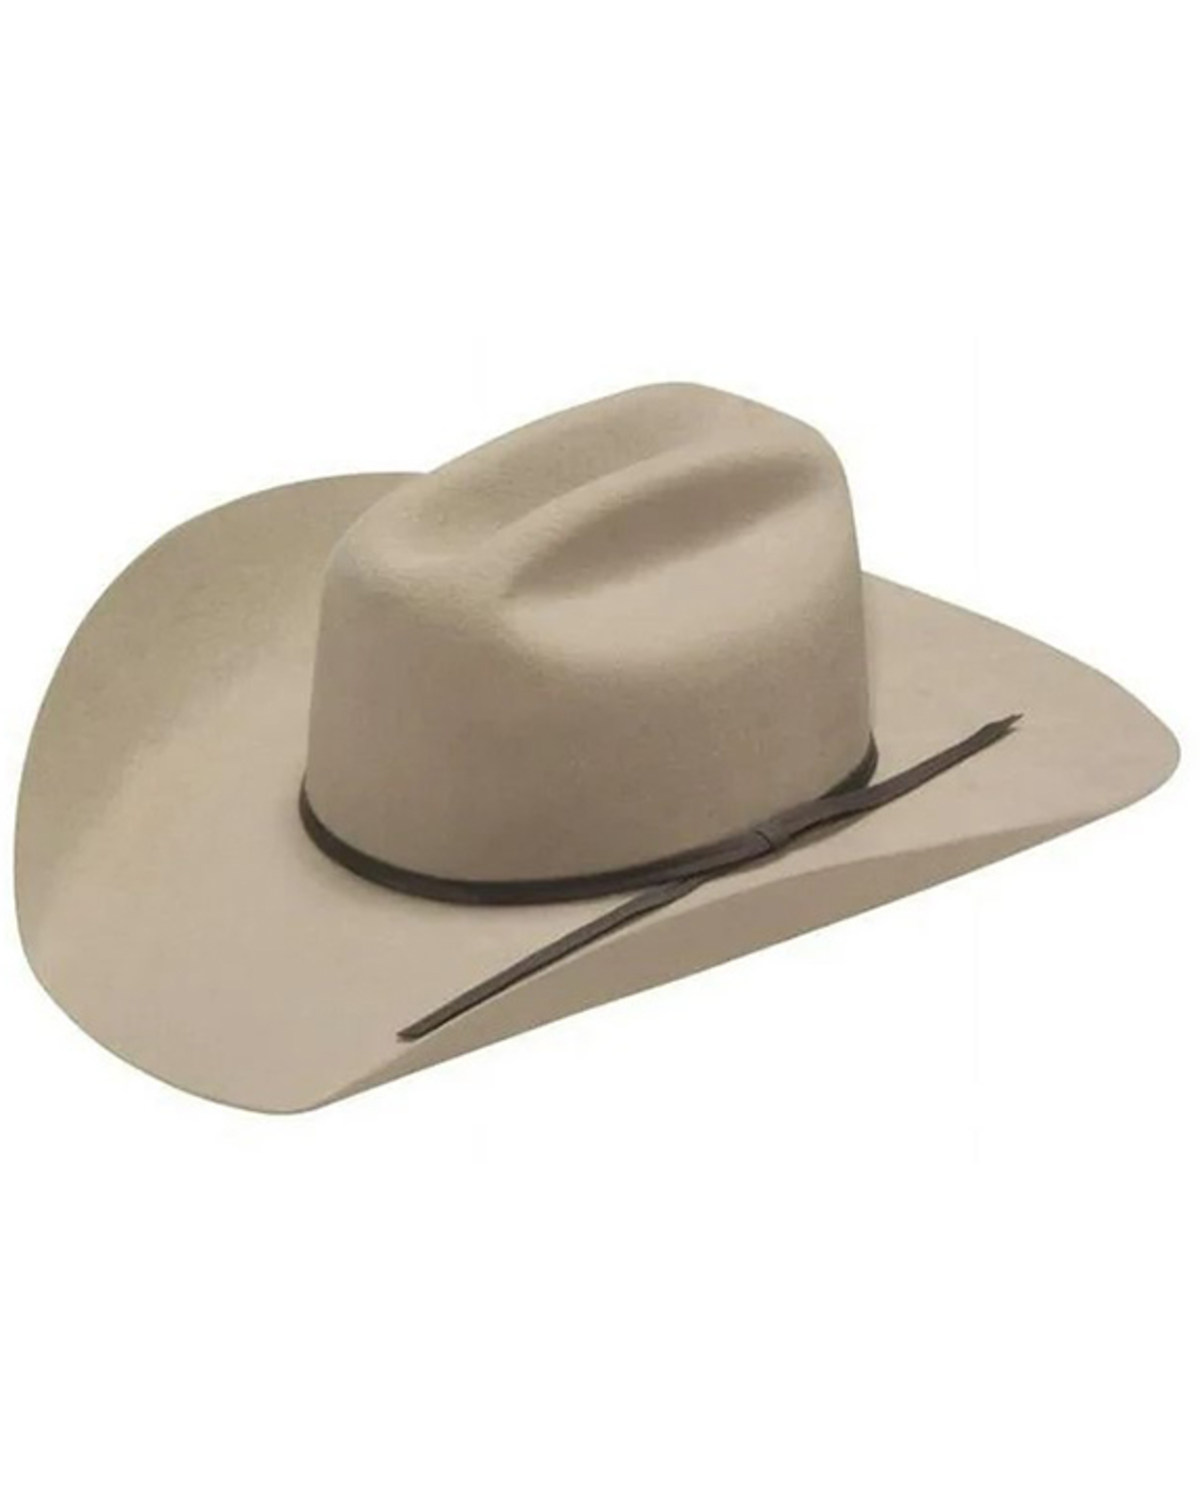 M & F Western Kids' Twister Felt Cowboy Hat